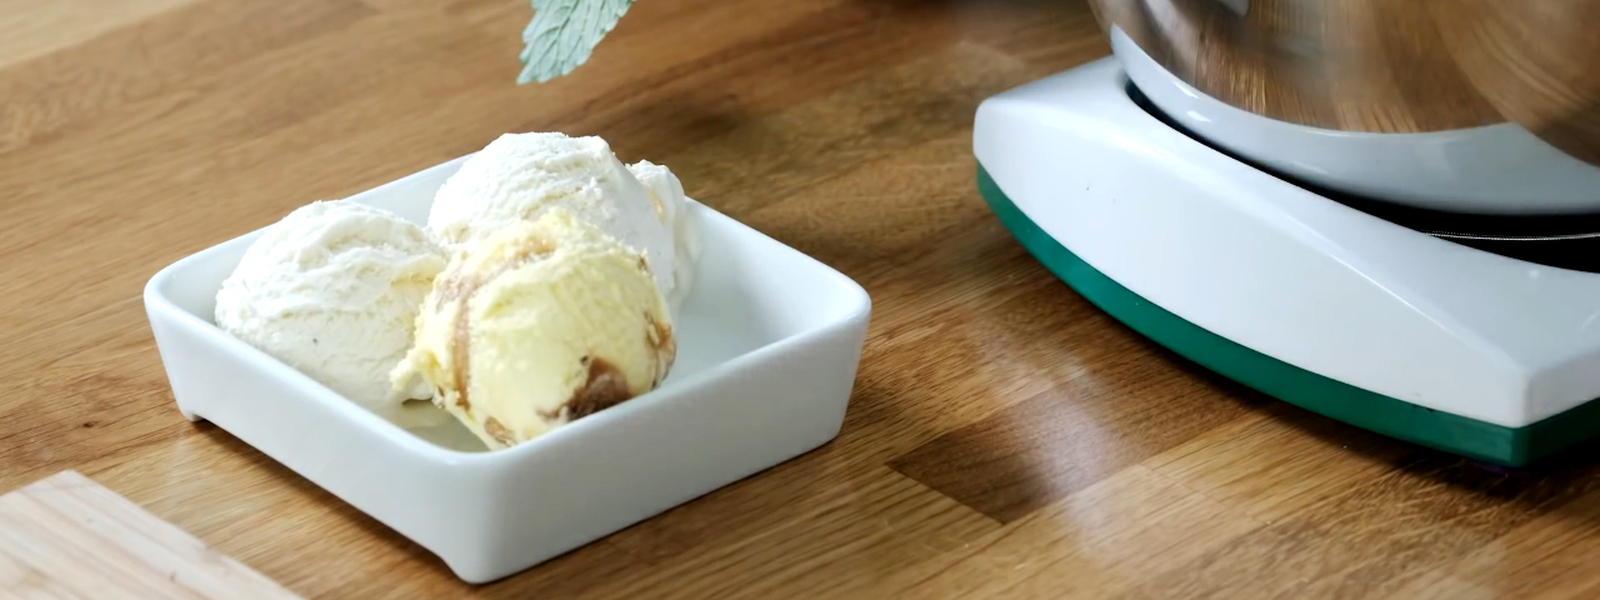 Ako si vyrobiť zmrzlinu bez zmrzlinovača?